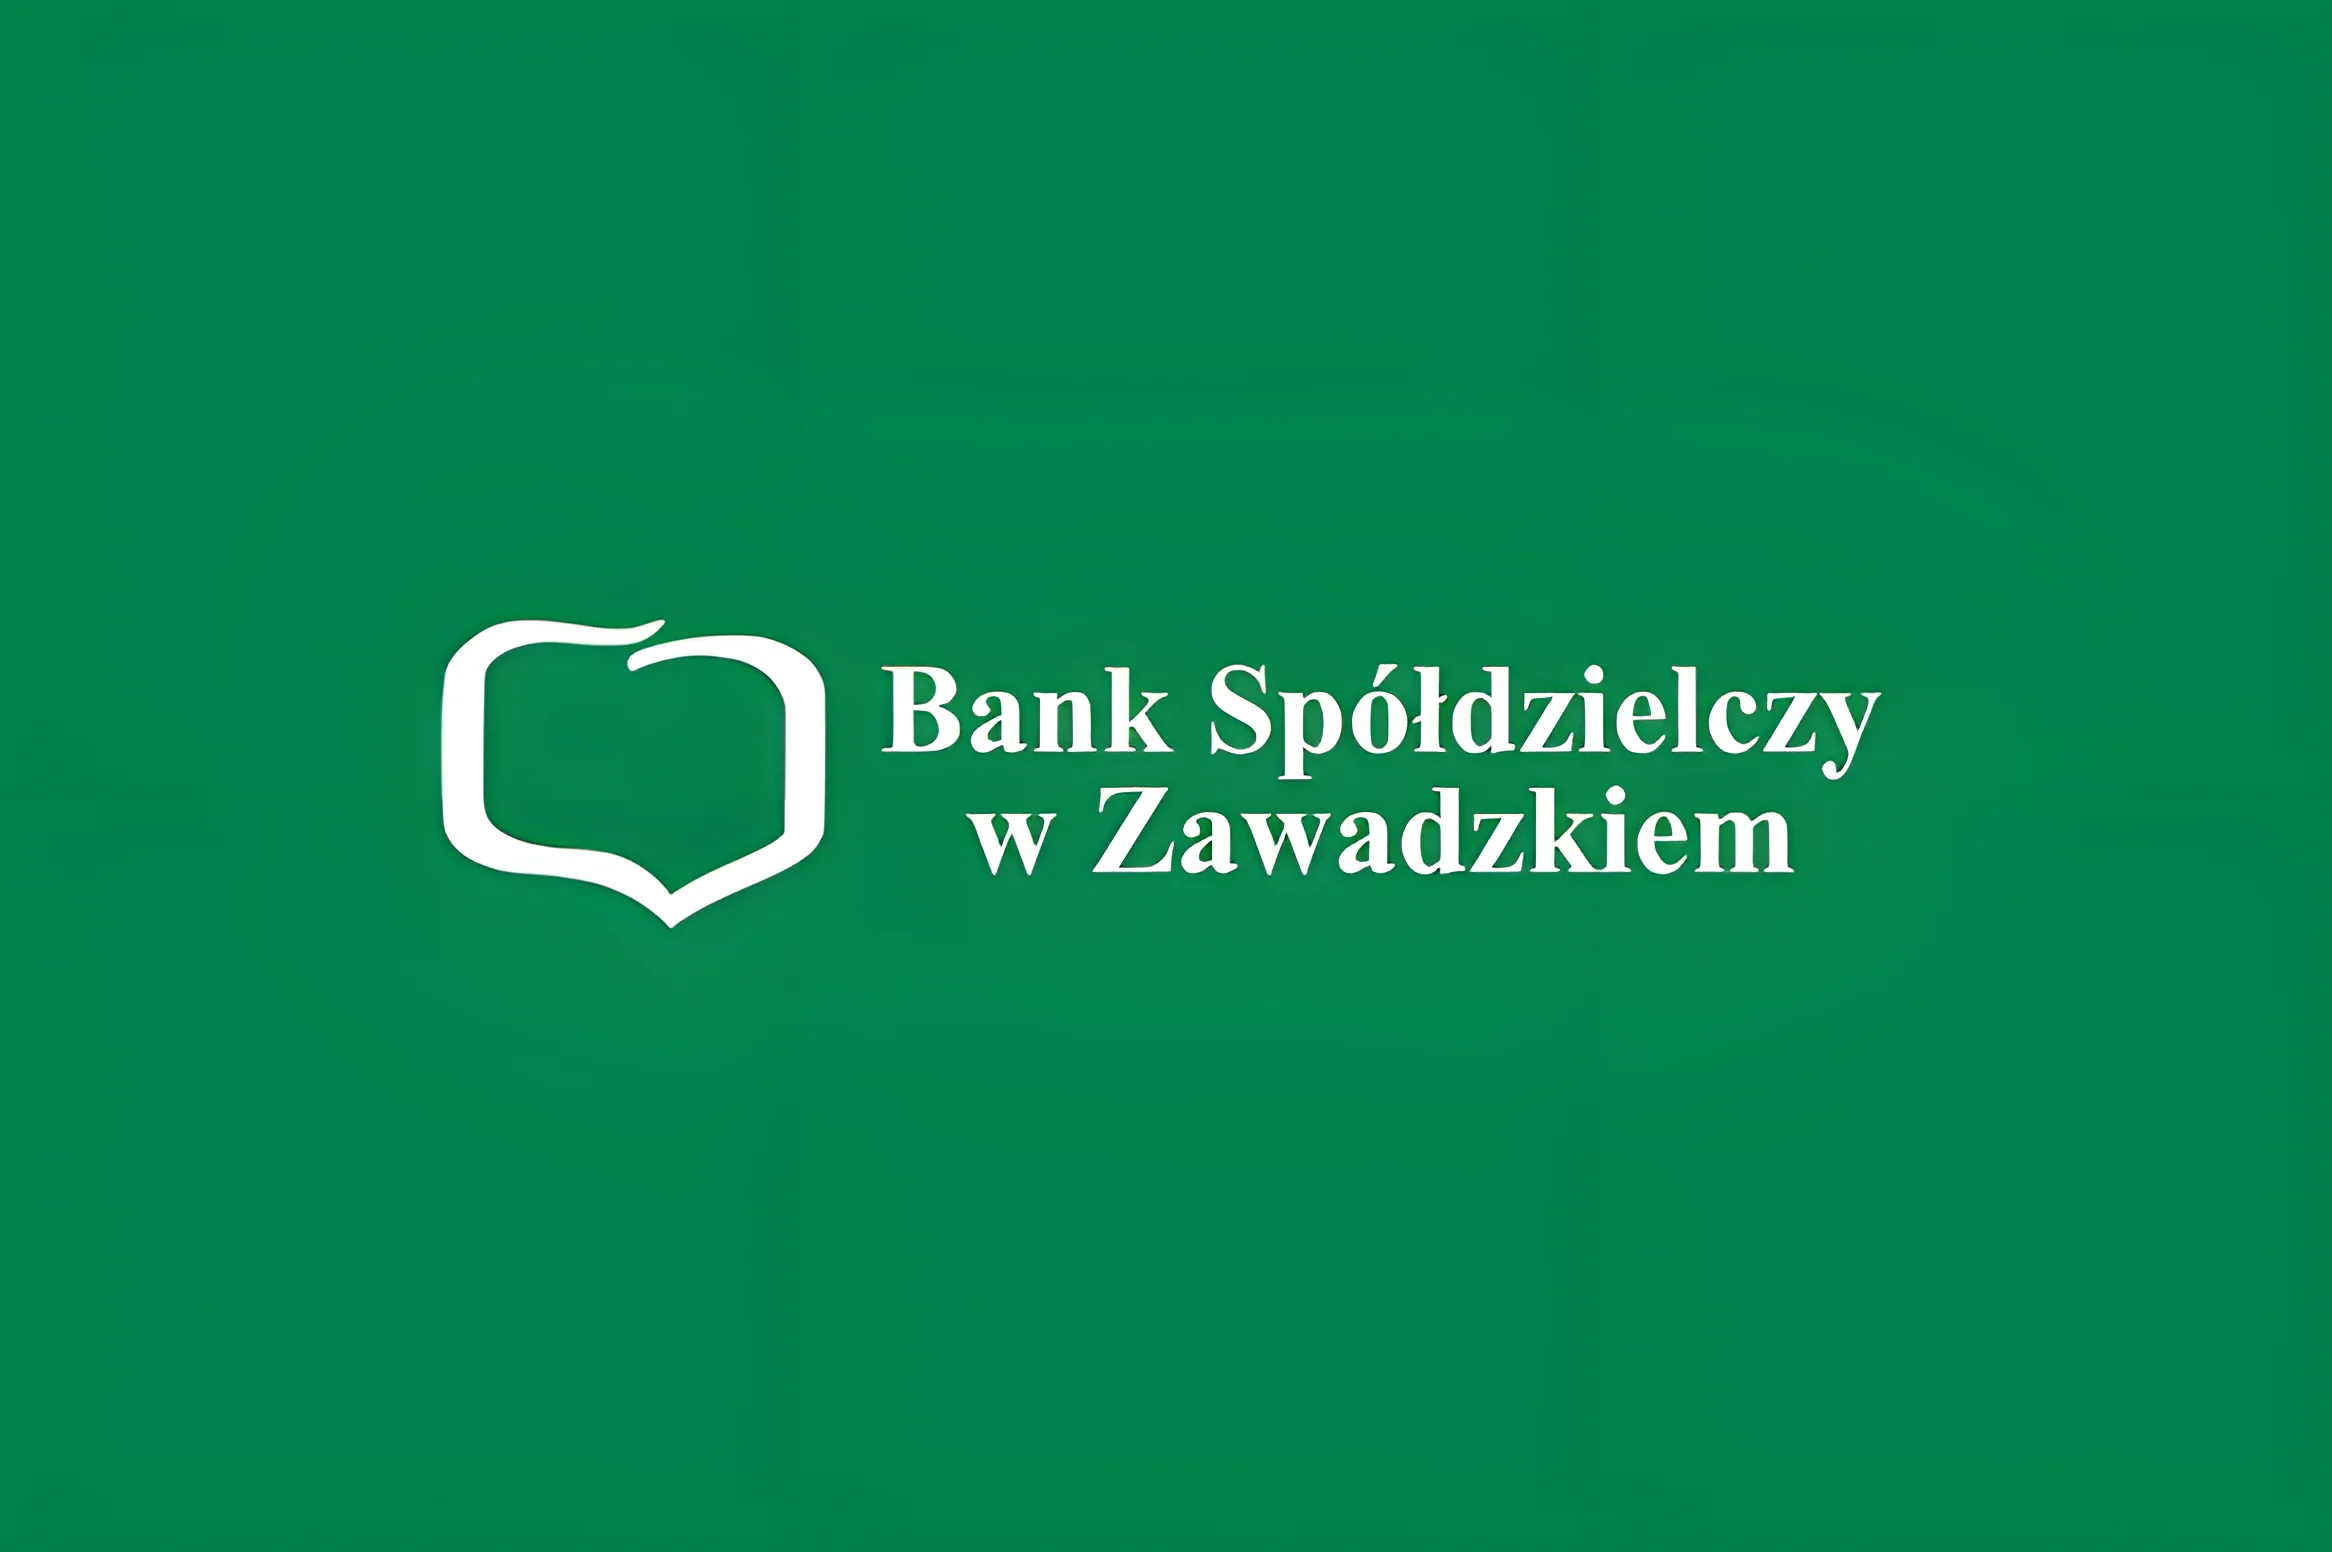 Władze Banku Spółdzielczego w Zawadzkiem